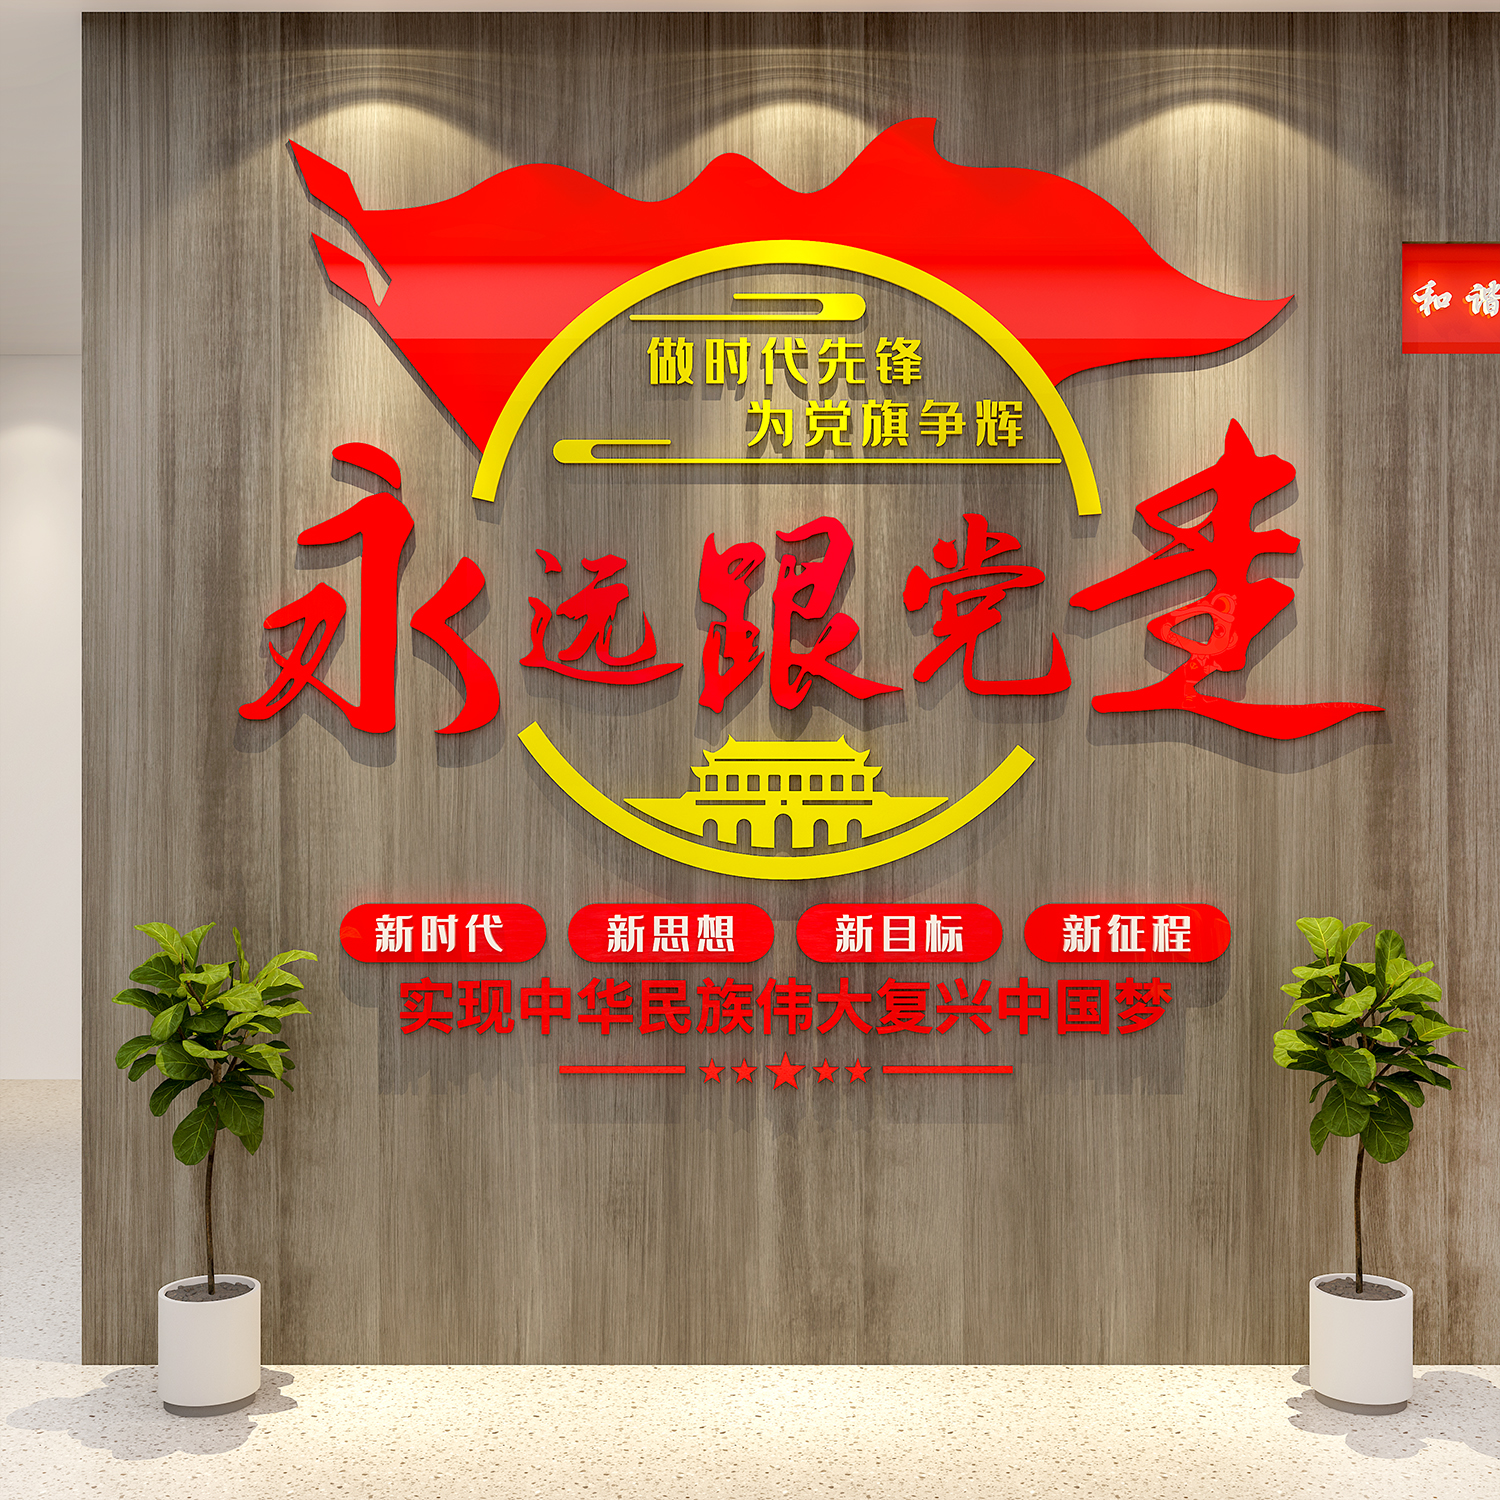 党建文化墙贴设计支部活动会议室背景装饰红色企业主题布置宣传画